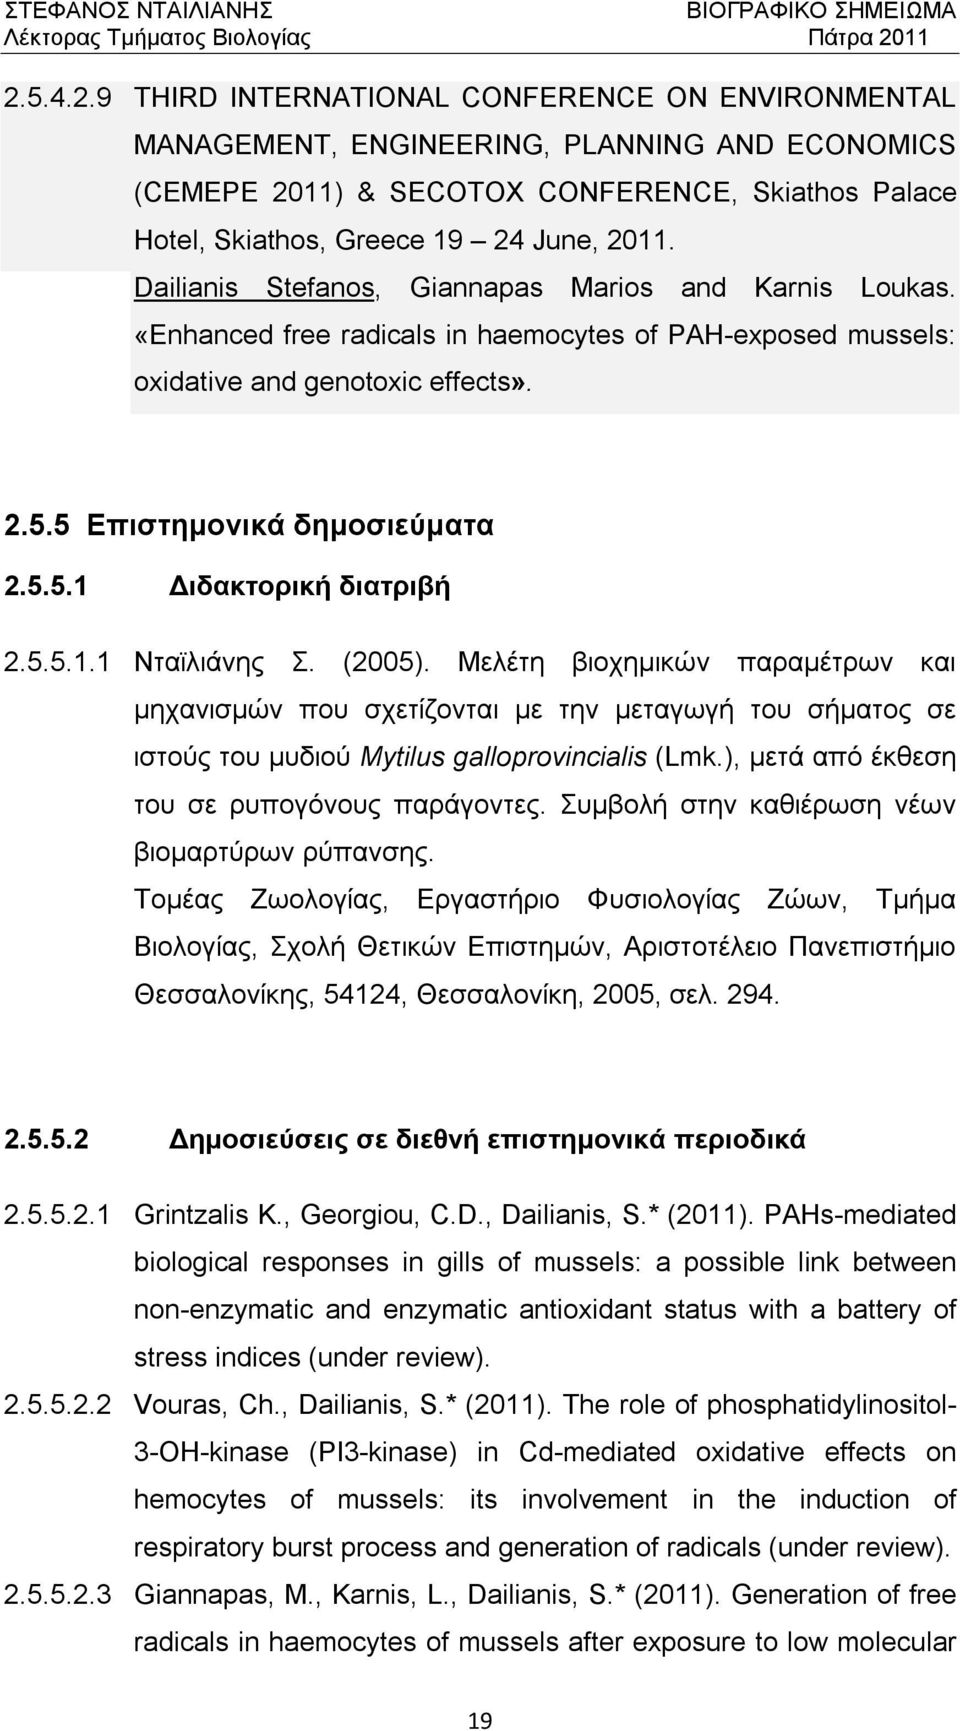 5.5.1.1 Νταϊλιάνης Σ. (2005). Μελέτη βιοχημικών παραμέτρων και μηχανισμών που σχετίζονται με την μεταγωγή του σήματος σε ιστούς του μυδιού Mytilus galloprovincialis (Lmk.